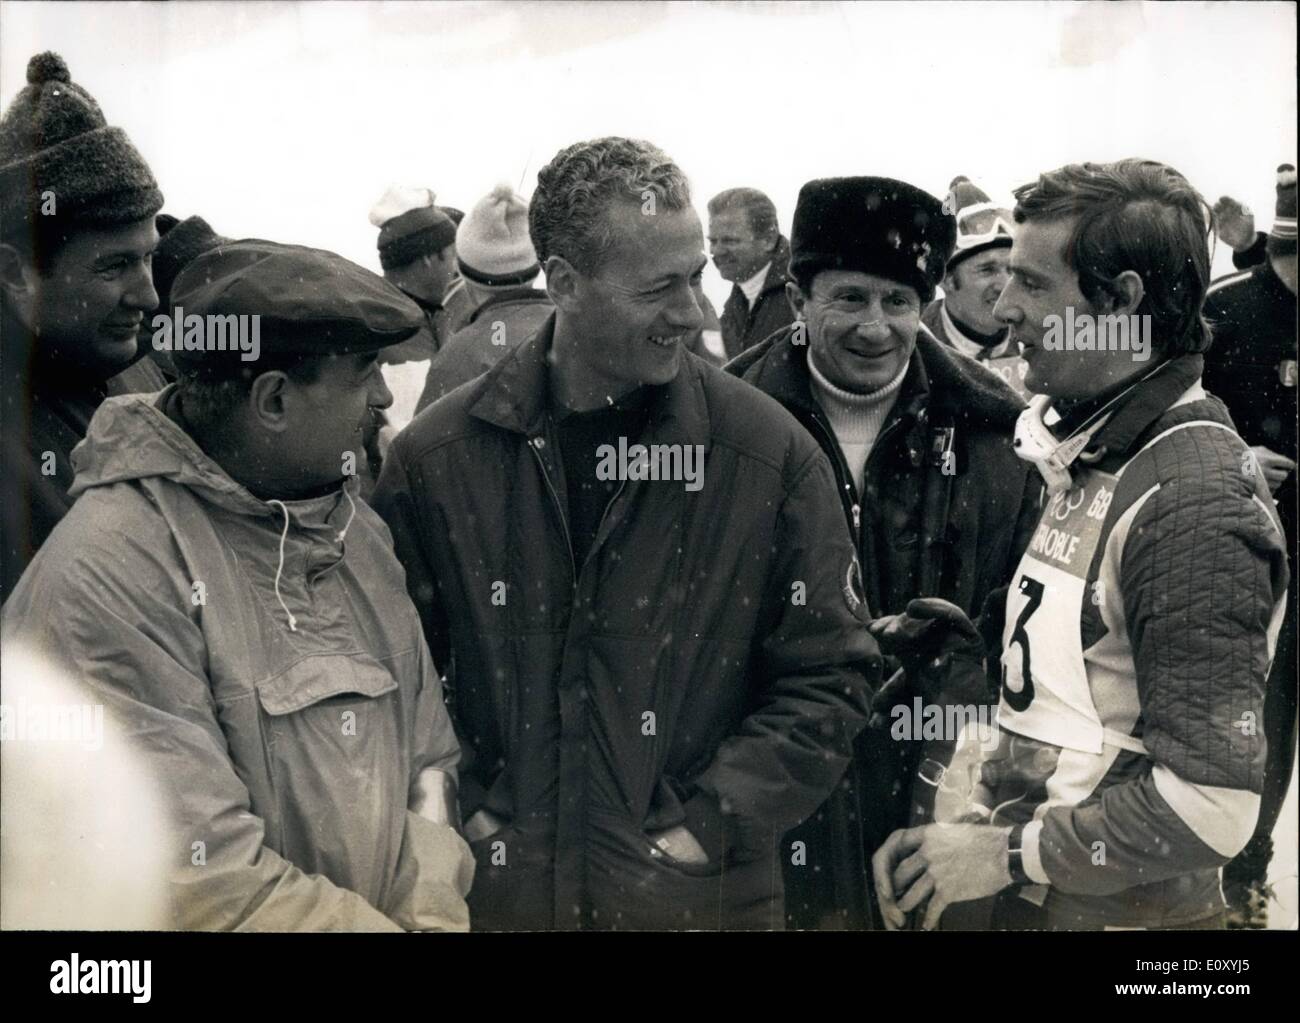 Febbraio 02, 1968 - Il Ministro della Gioventù e dello sport Francois Missoffe è visto qui con Olympian Jean-Claude Killy e conte Jean de Beaumont. Occupazione della Repubblica socialista cecoslovacca Foto Stock